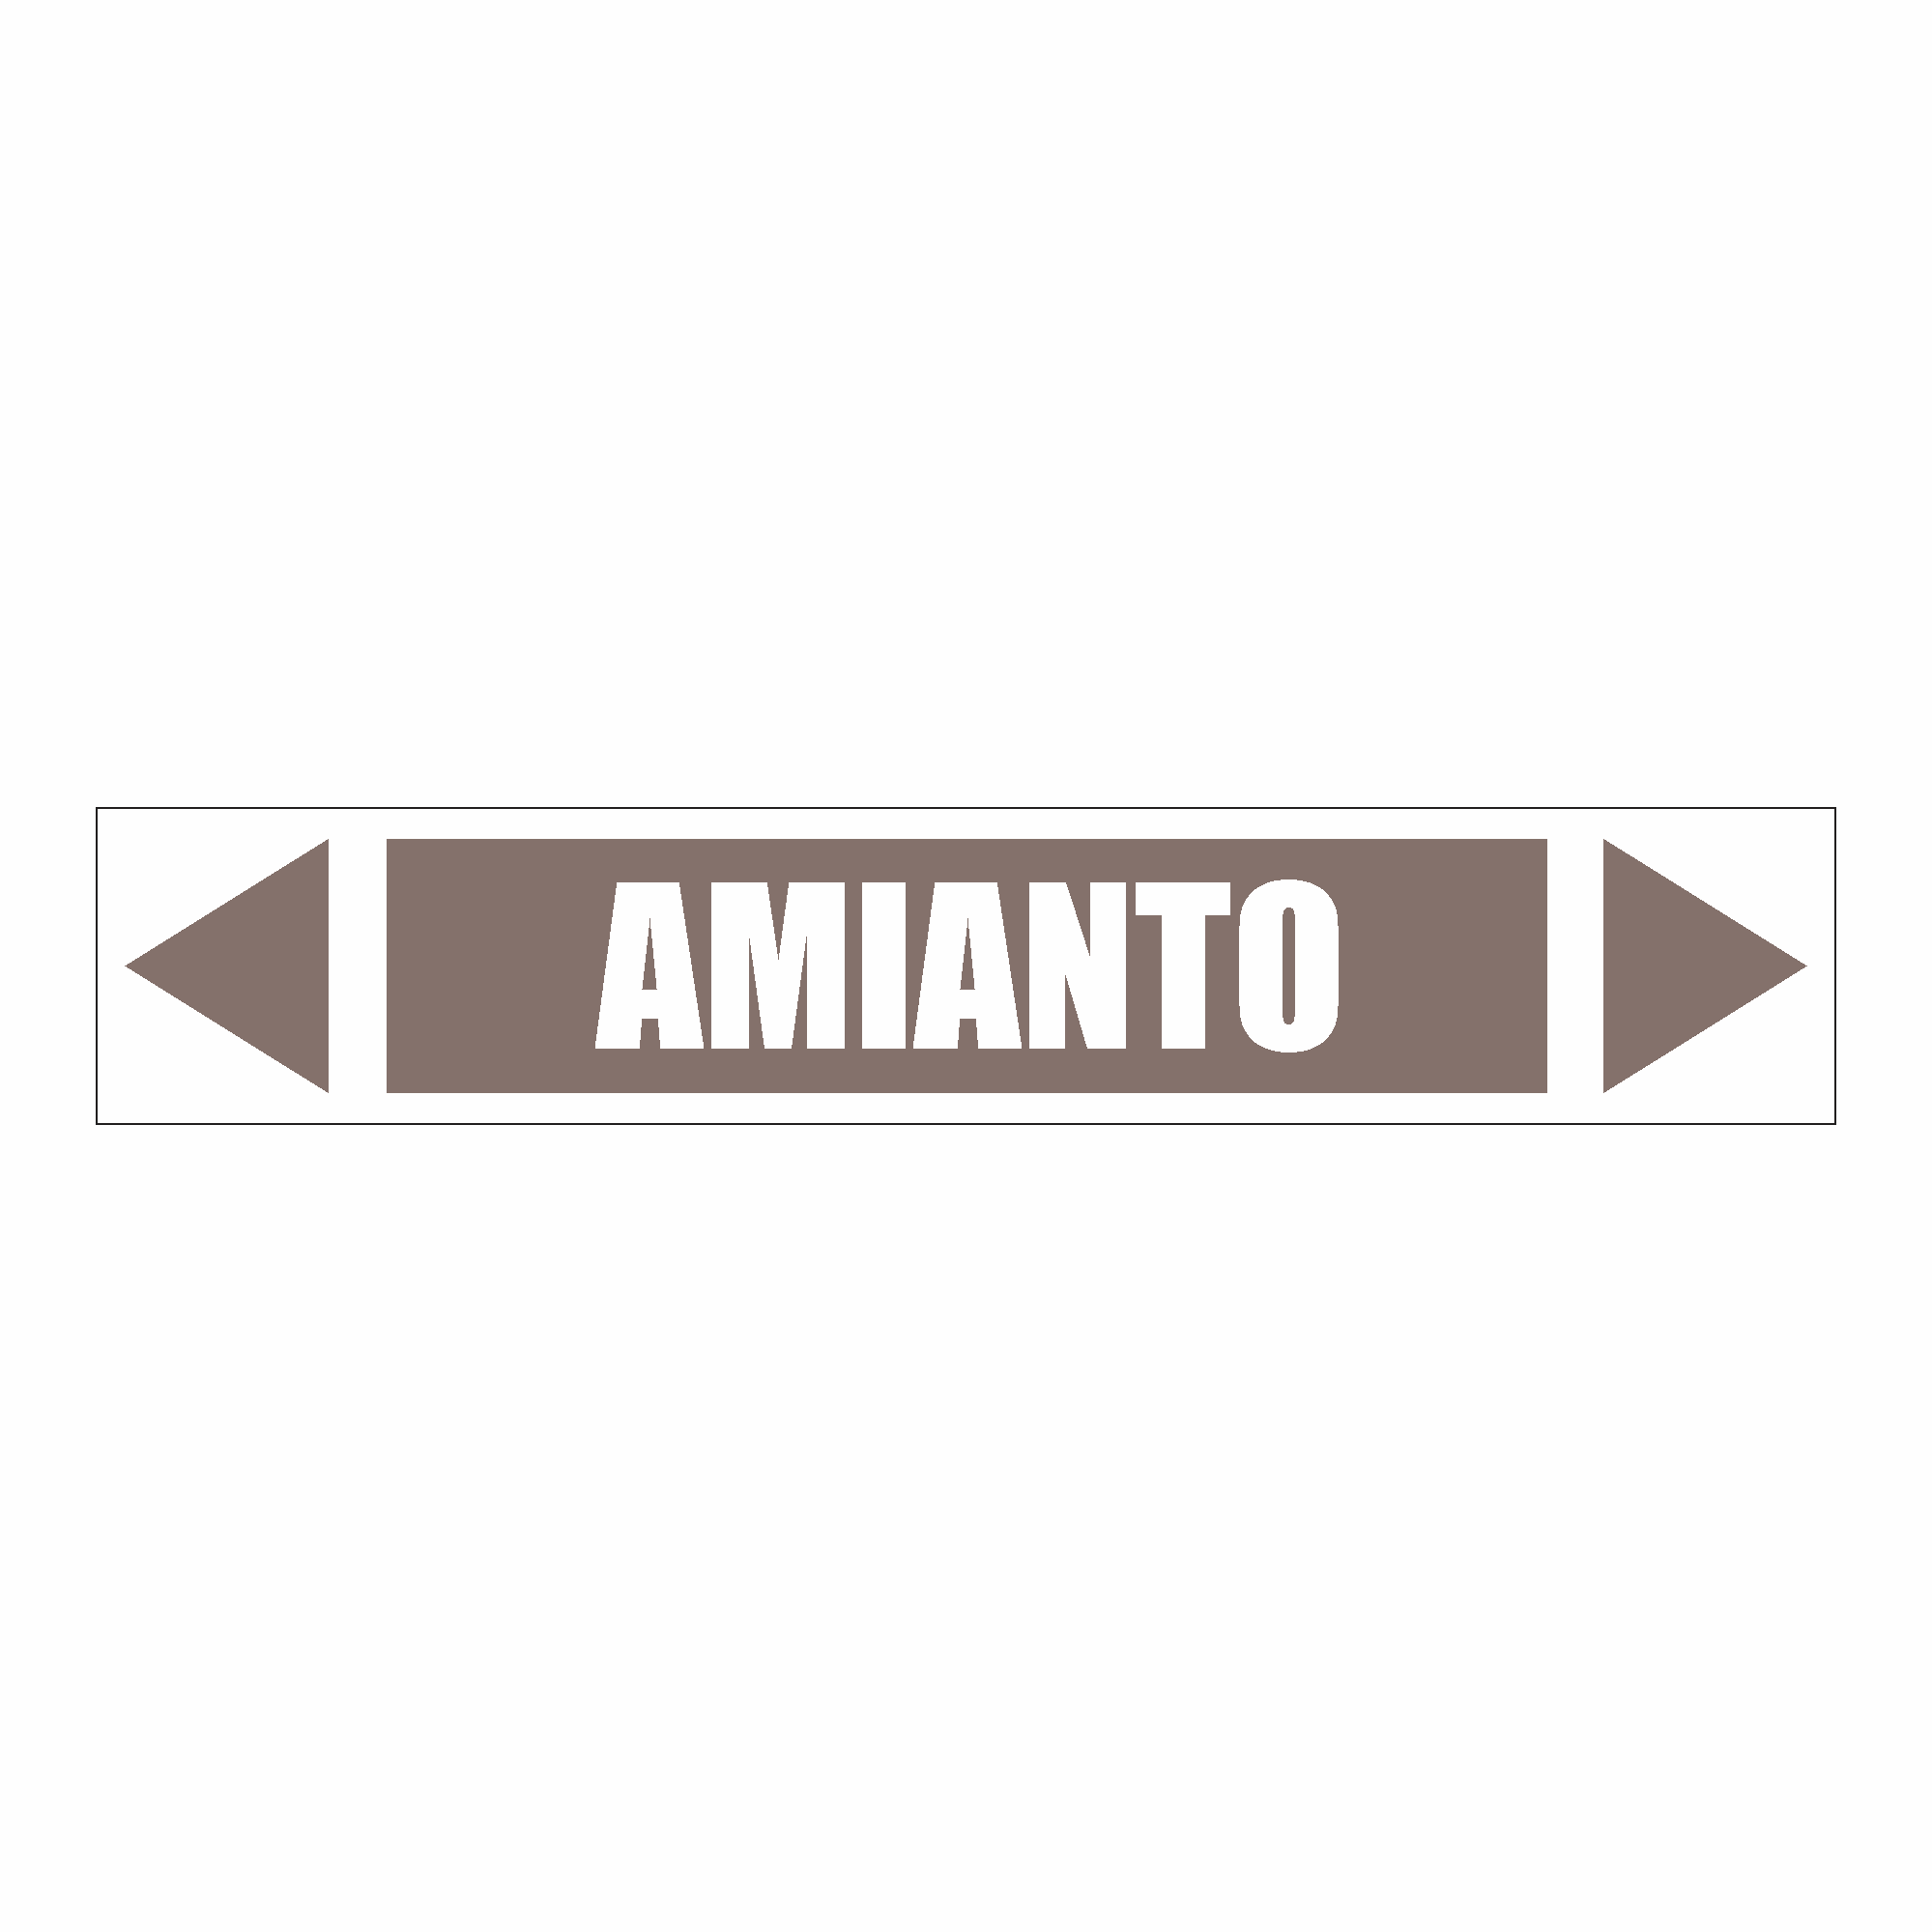 IDT 040 - Amianto